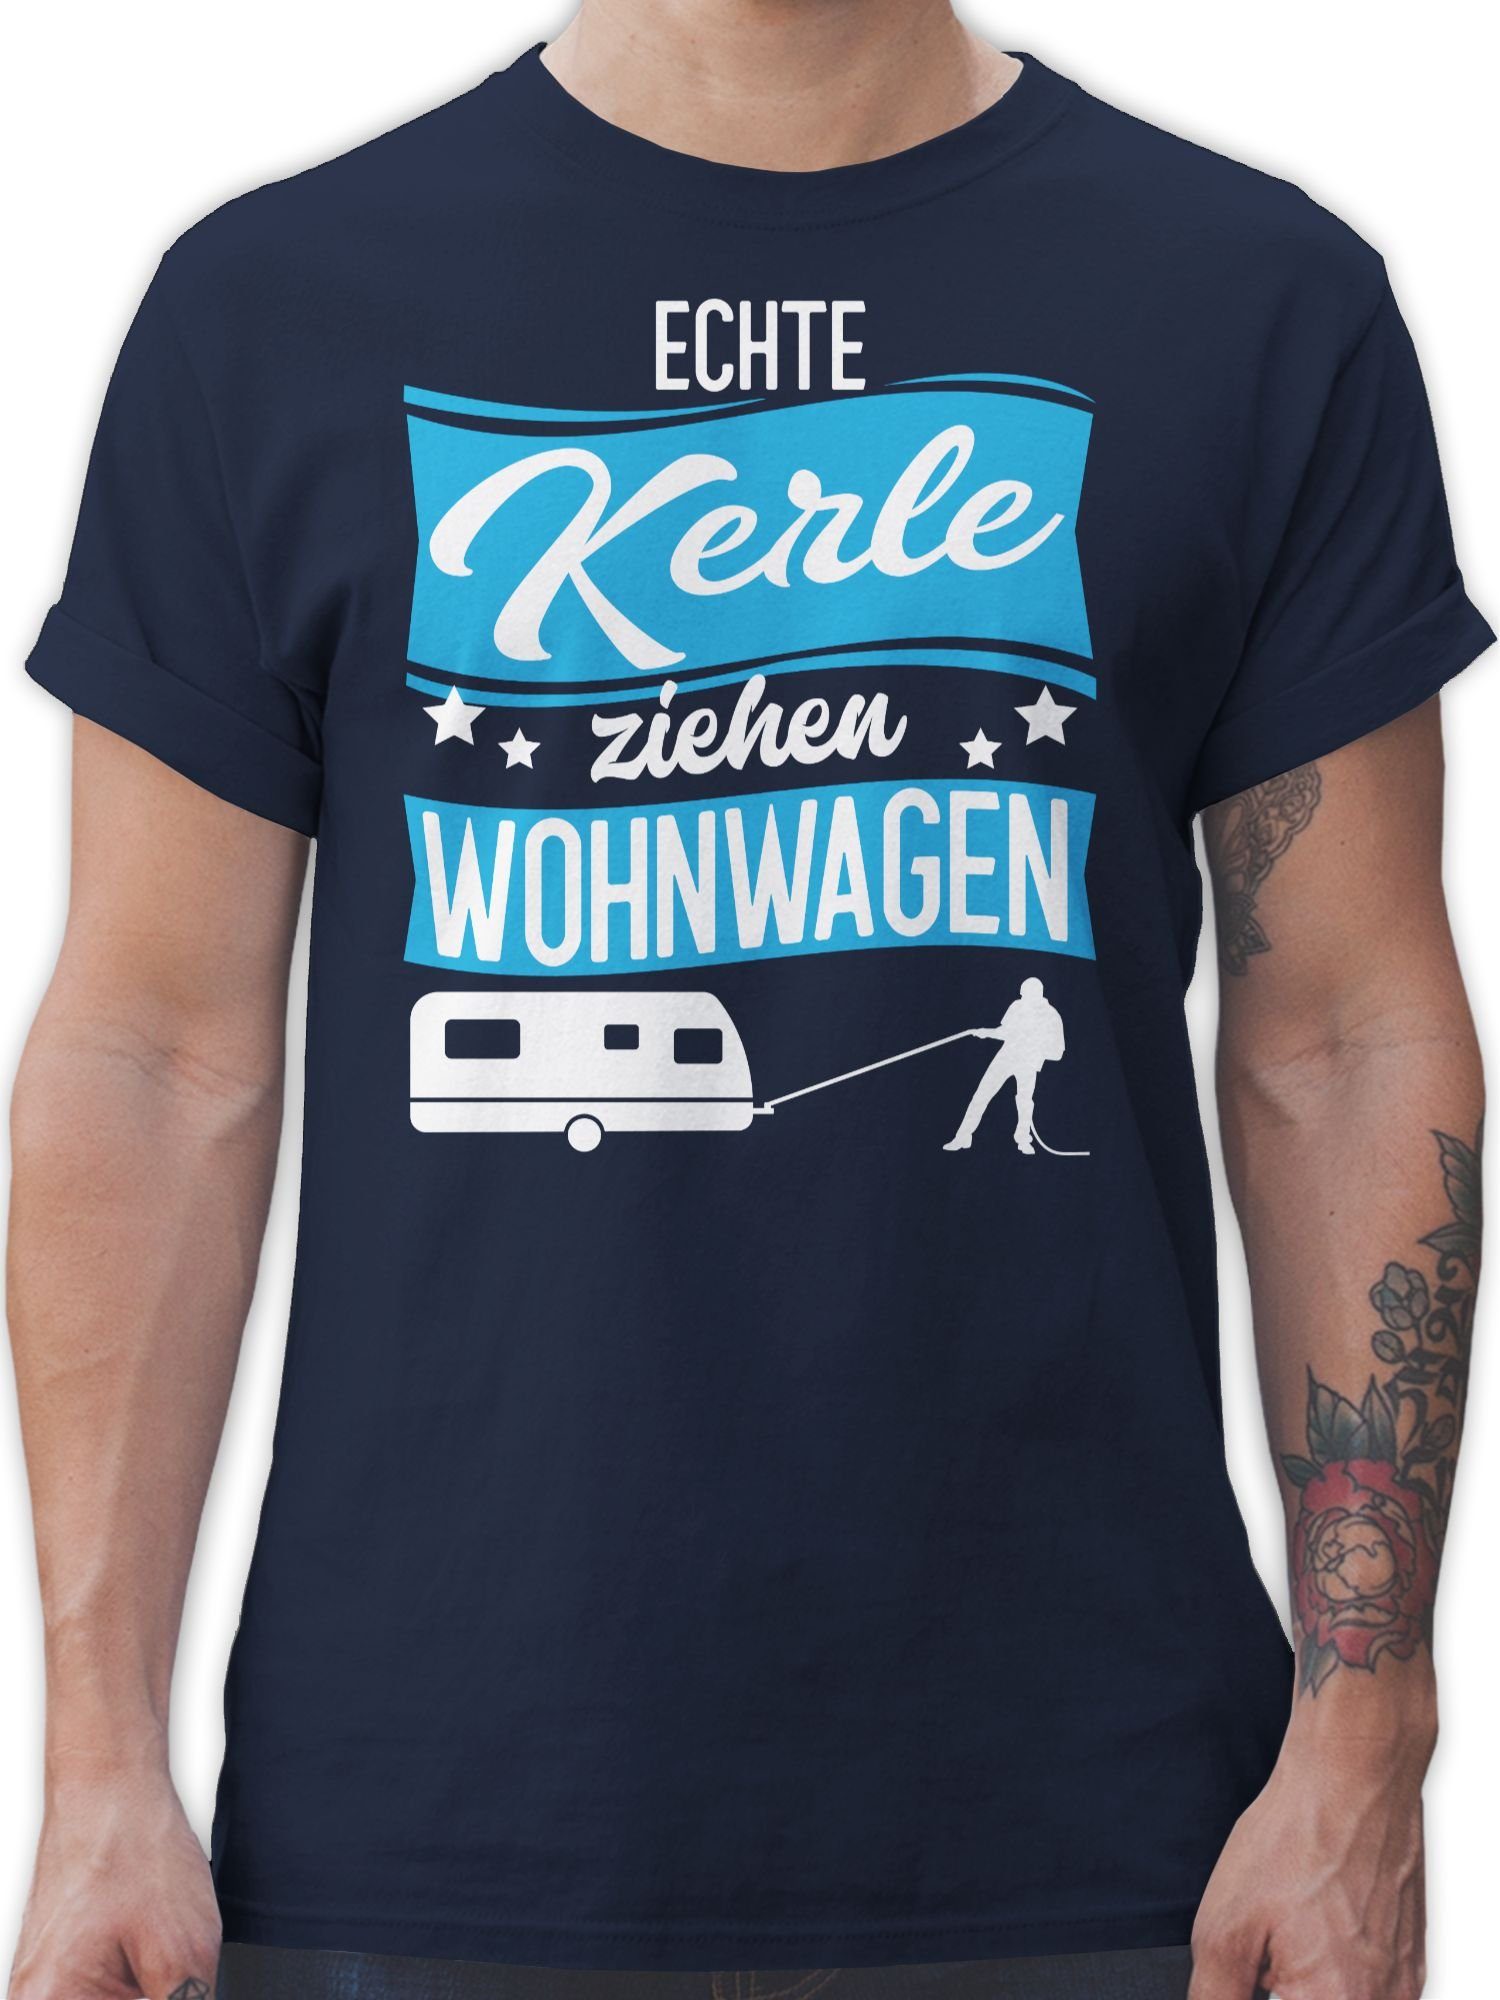 Shirtracer T-Shirt Echte Kerle ziehen Wohnwagen - weiß/blau Herren & Männer Geschenke 1 Navy Blau